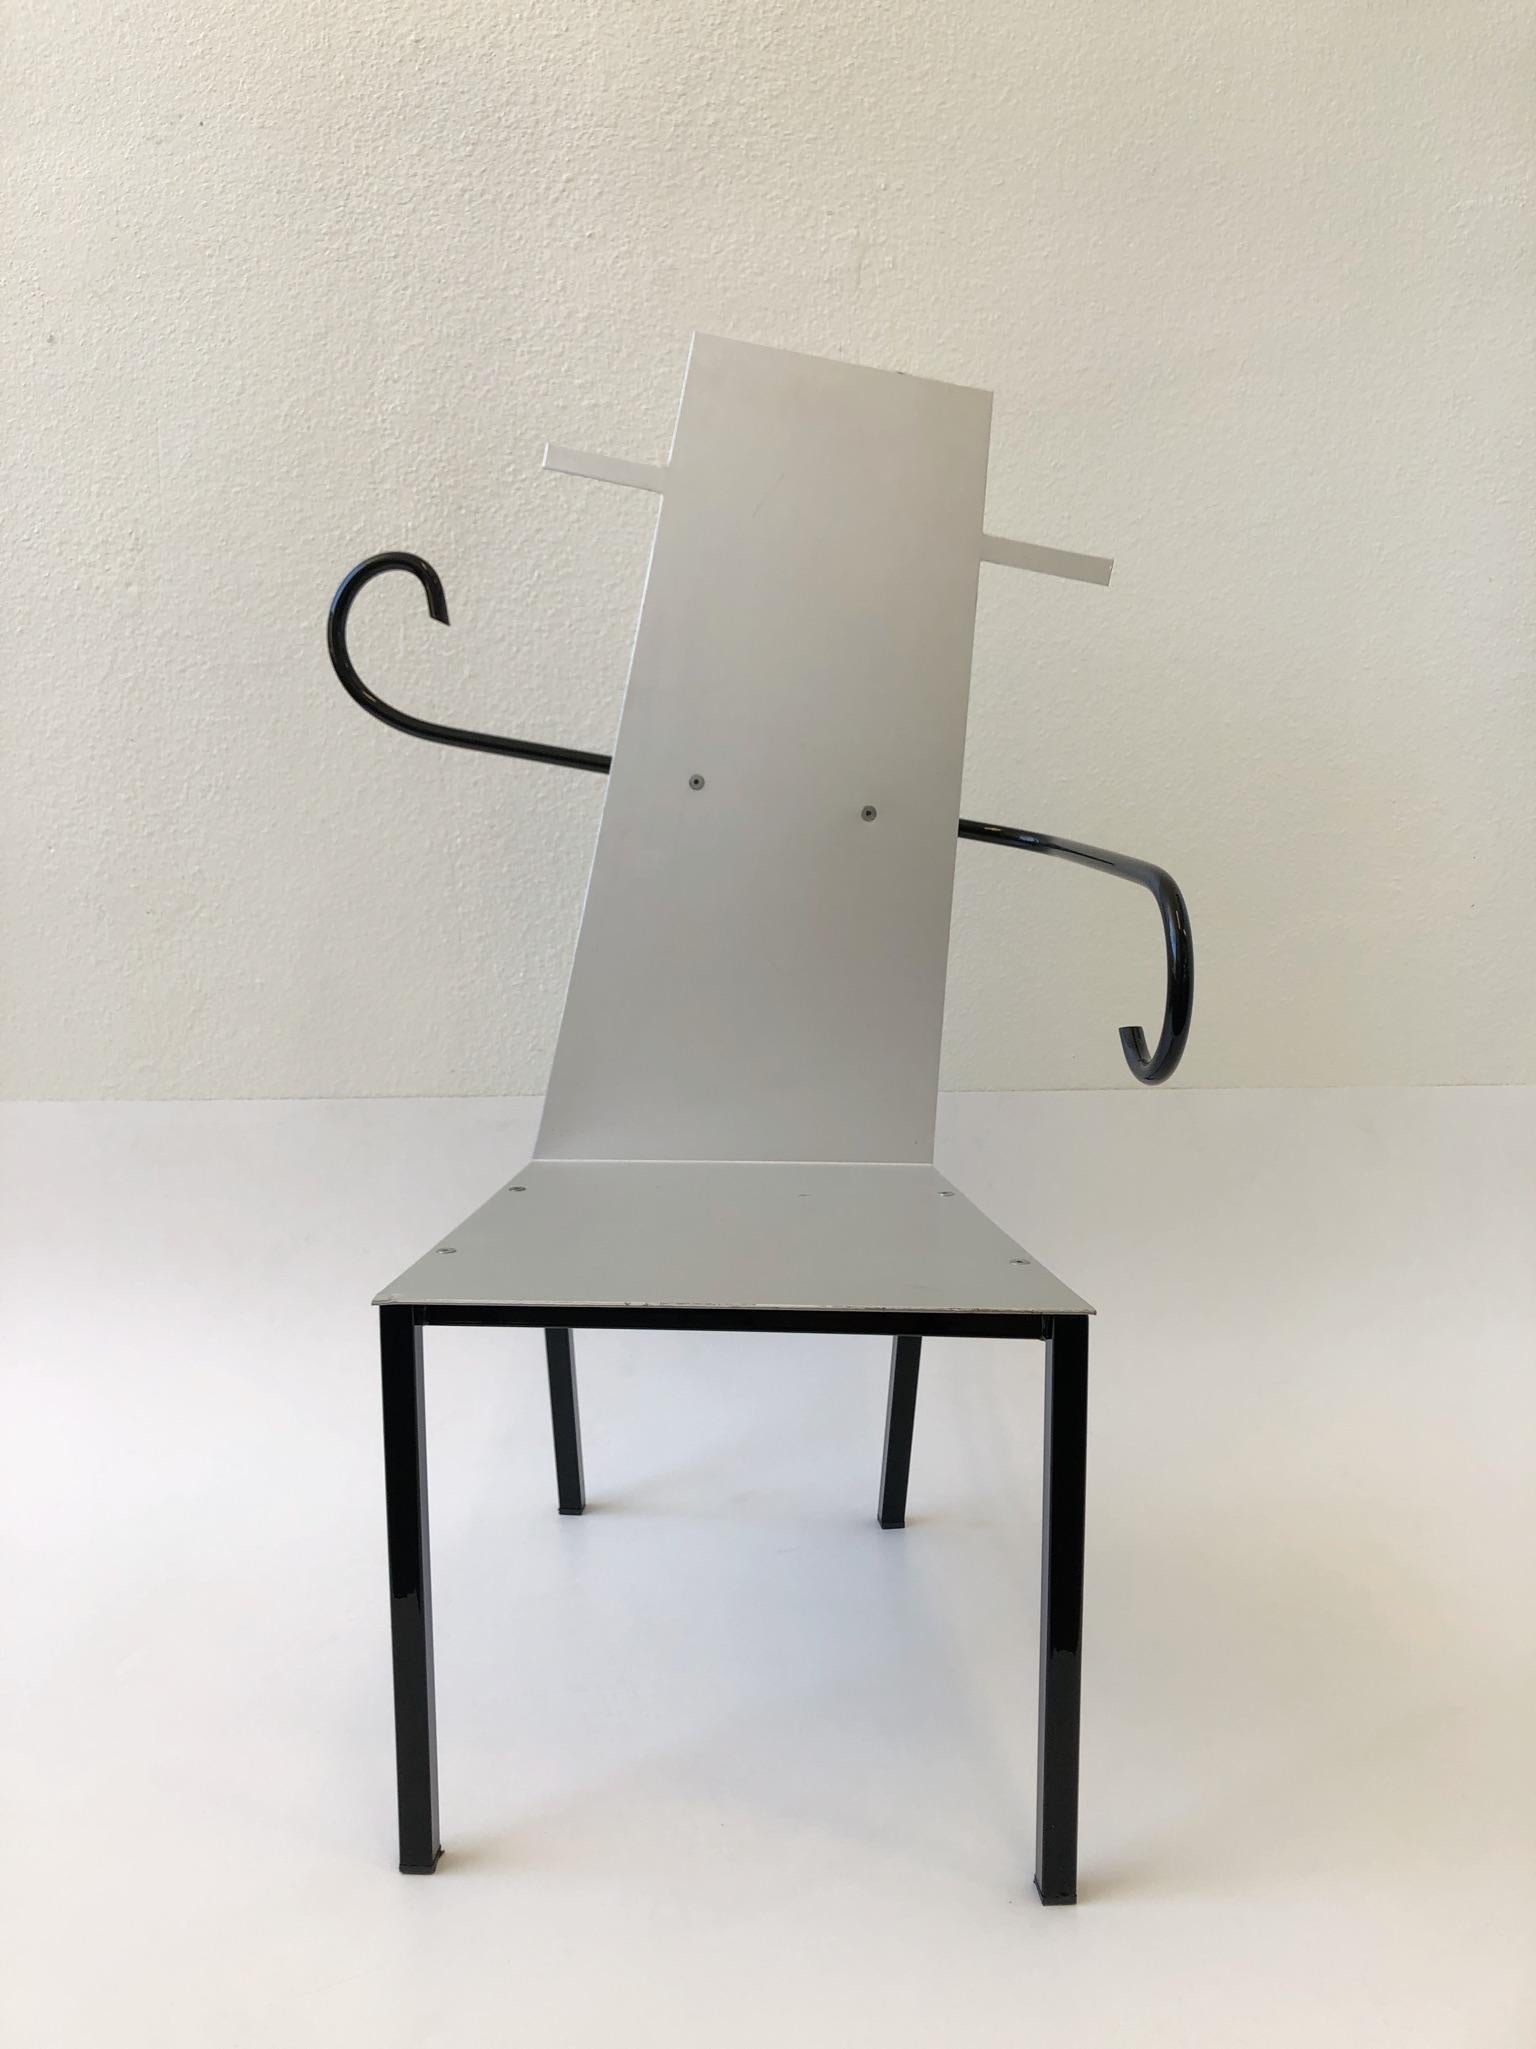 Ein spektakulärer italienischer postmoderner skulpturaler Sessel aus den 1980er Jahren.
Der schwarze Teil des Stuhls besteht aus pulverbeschichtetem Stahl, Sitz und Rückenlehne aus satiniertem Aluminium. Die Sitzfläche weist leichte Gebrauchsspuren